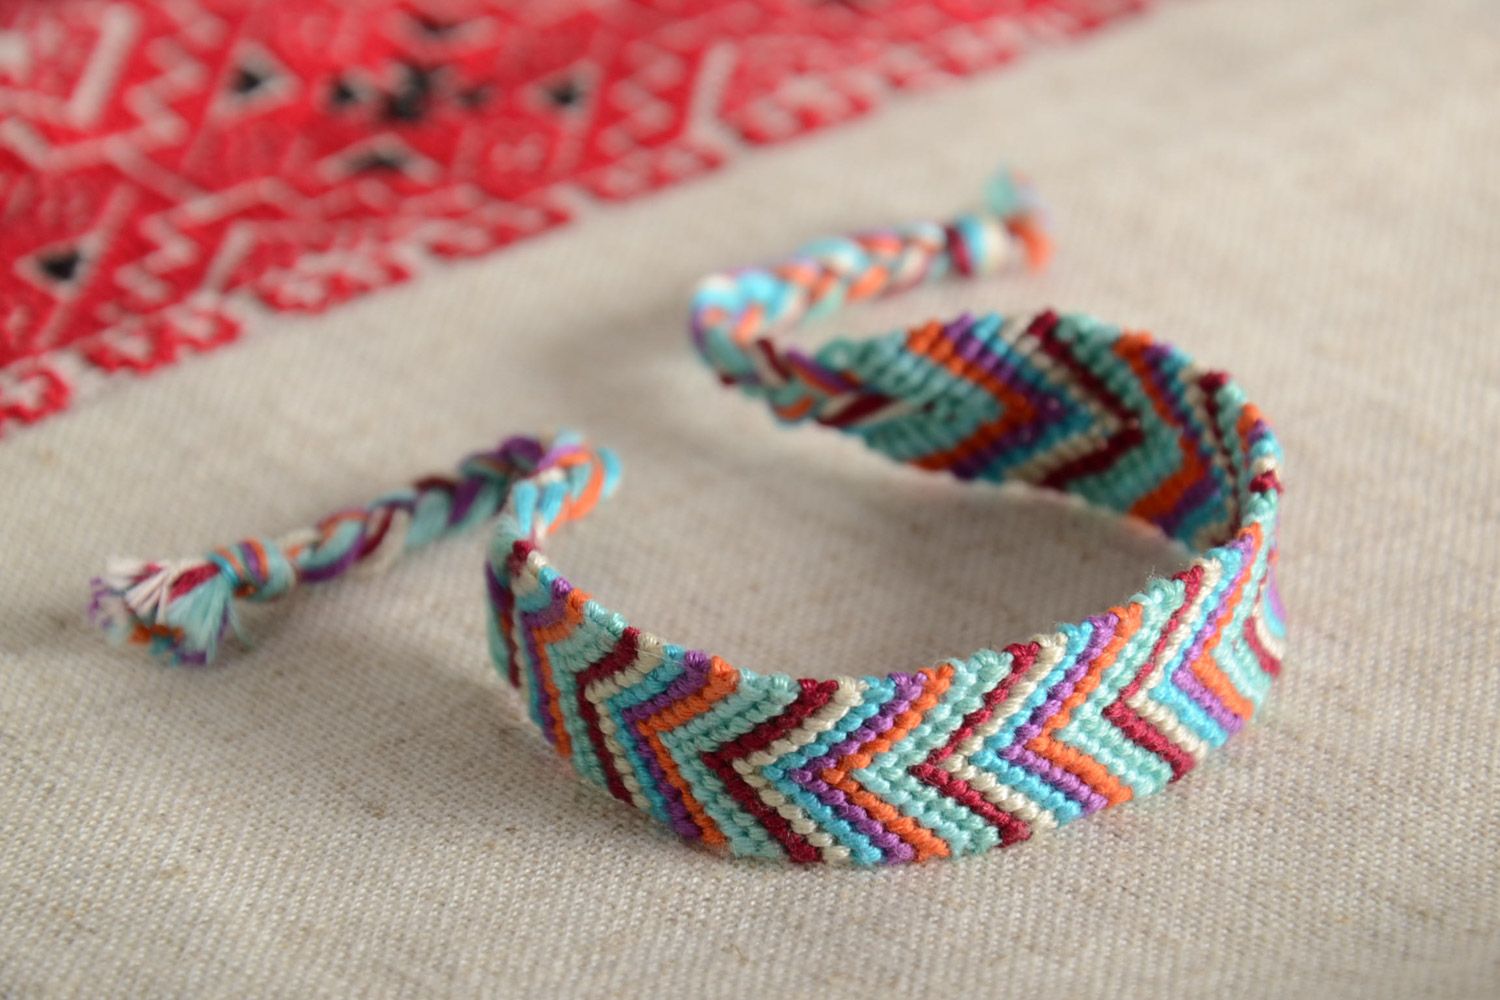 Текстильный браслет из ниток наручный цвветной необычный стильный ручная работа фото 1